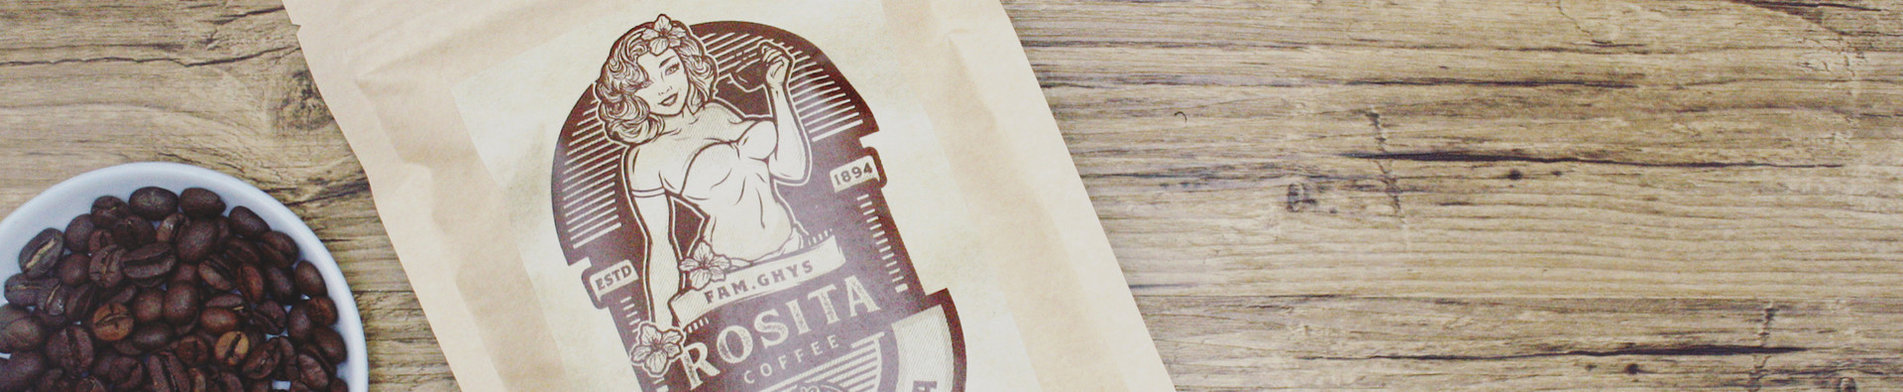 Koffie-Rosita